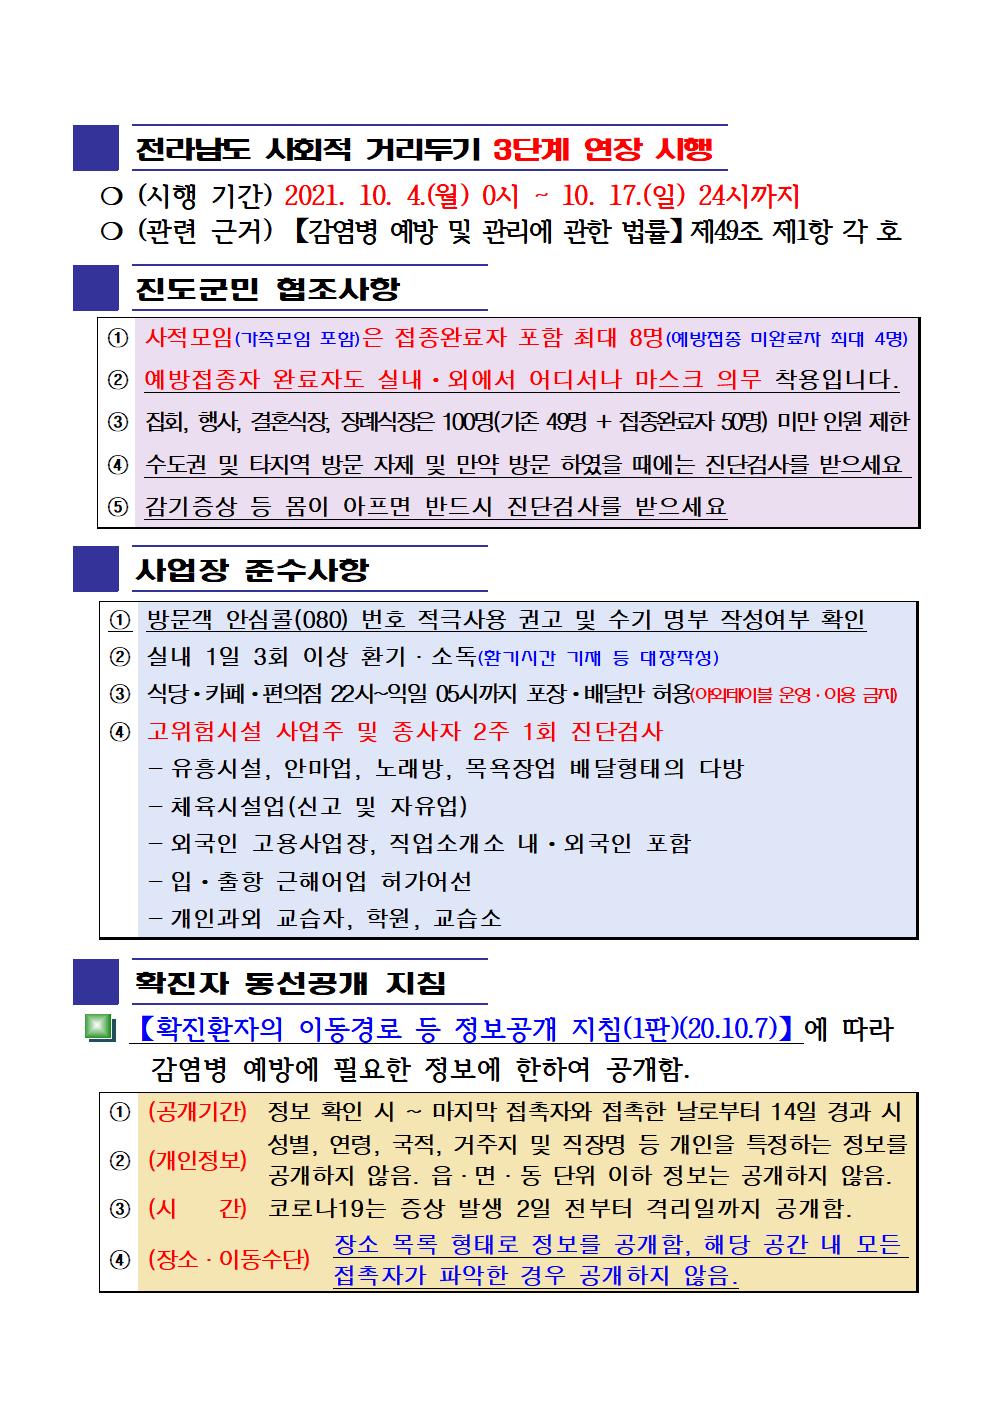 2021년 코로나19 대응 일일상황보고(10월 12일 24시 기준) 첨부#2